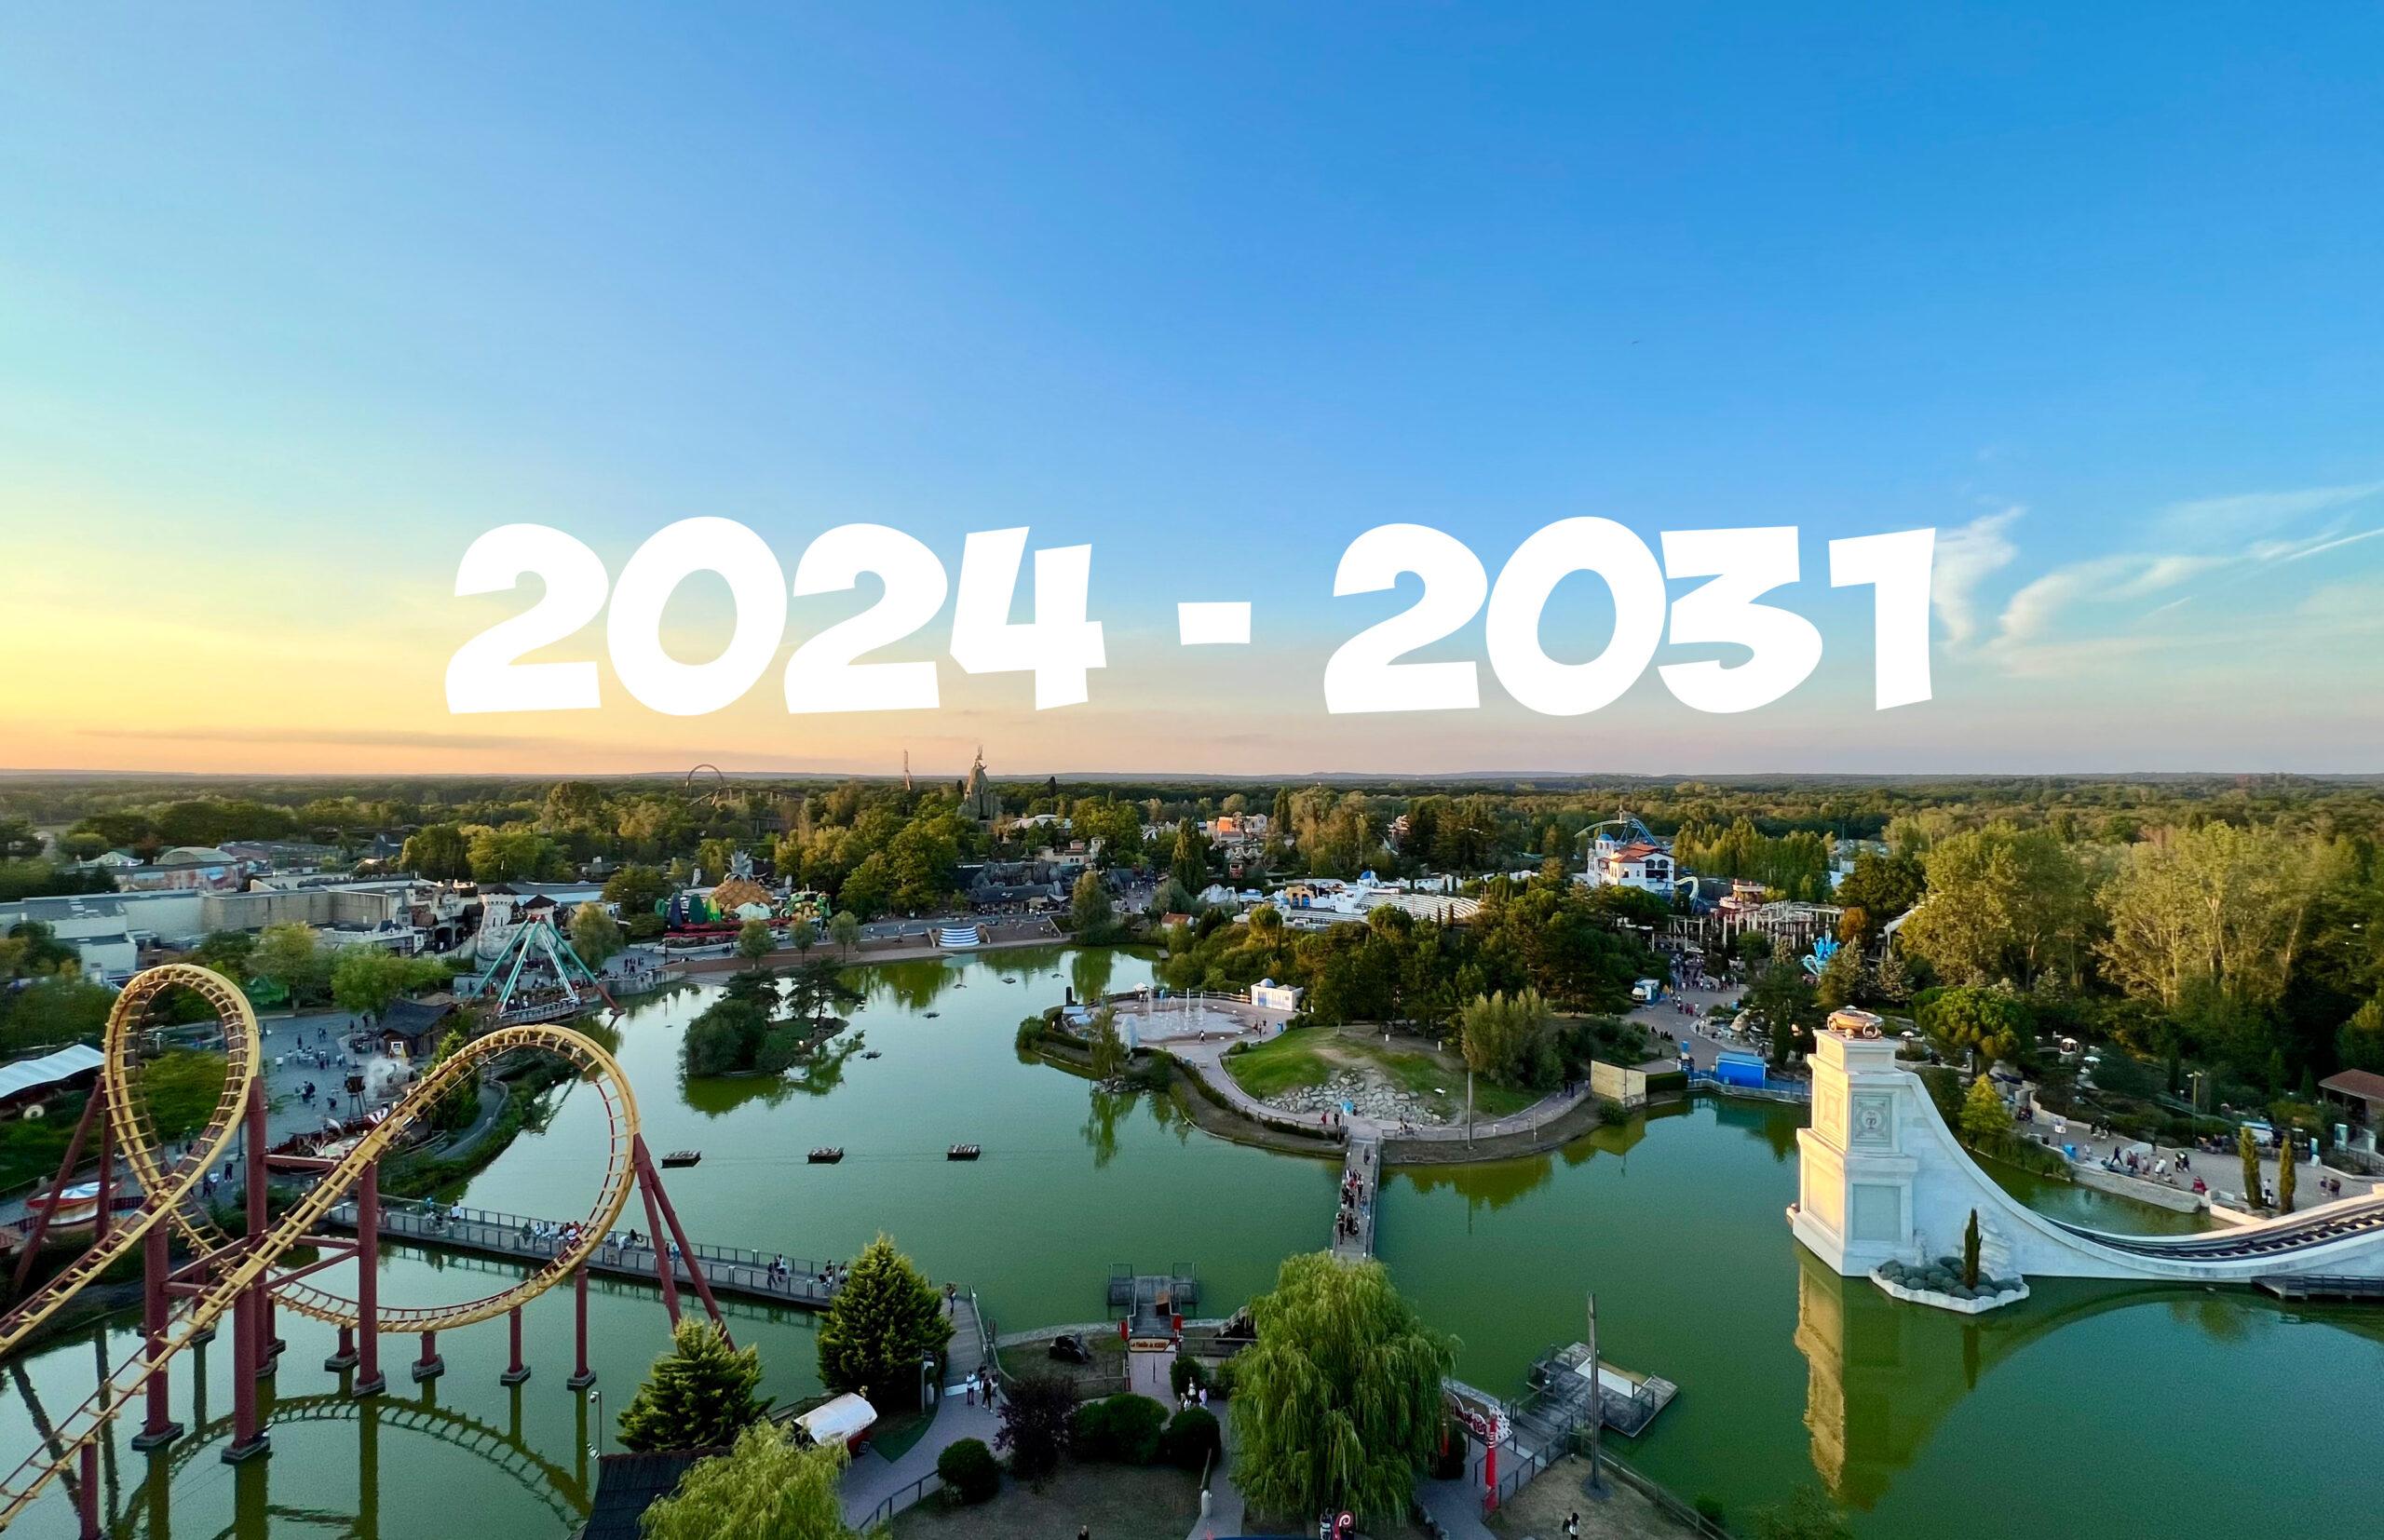 Le futur du Parc Astérix : nouvelles attractions, nouveaux hôtels et bien plus d’ici 2031